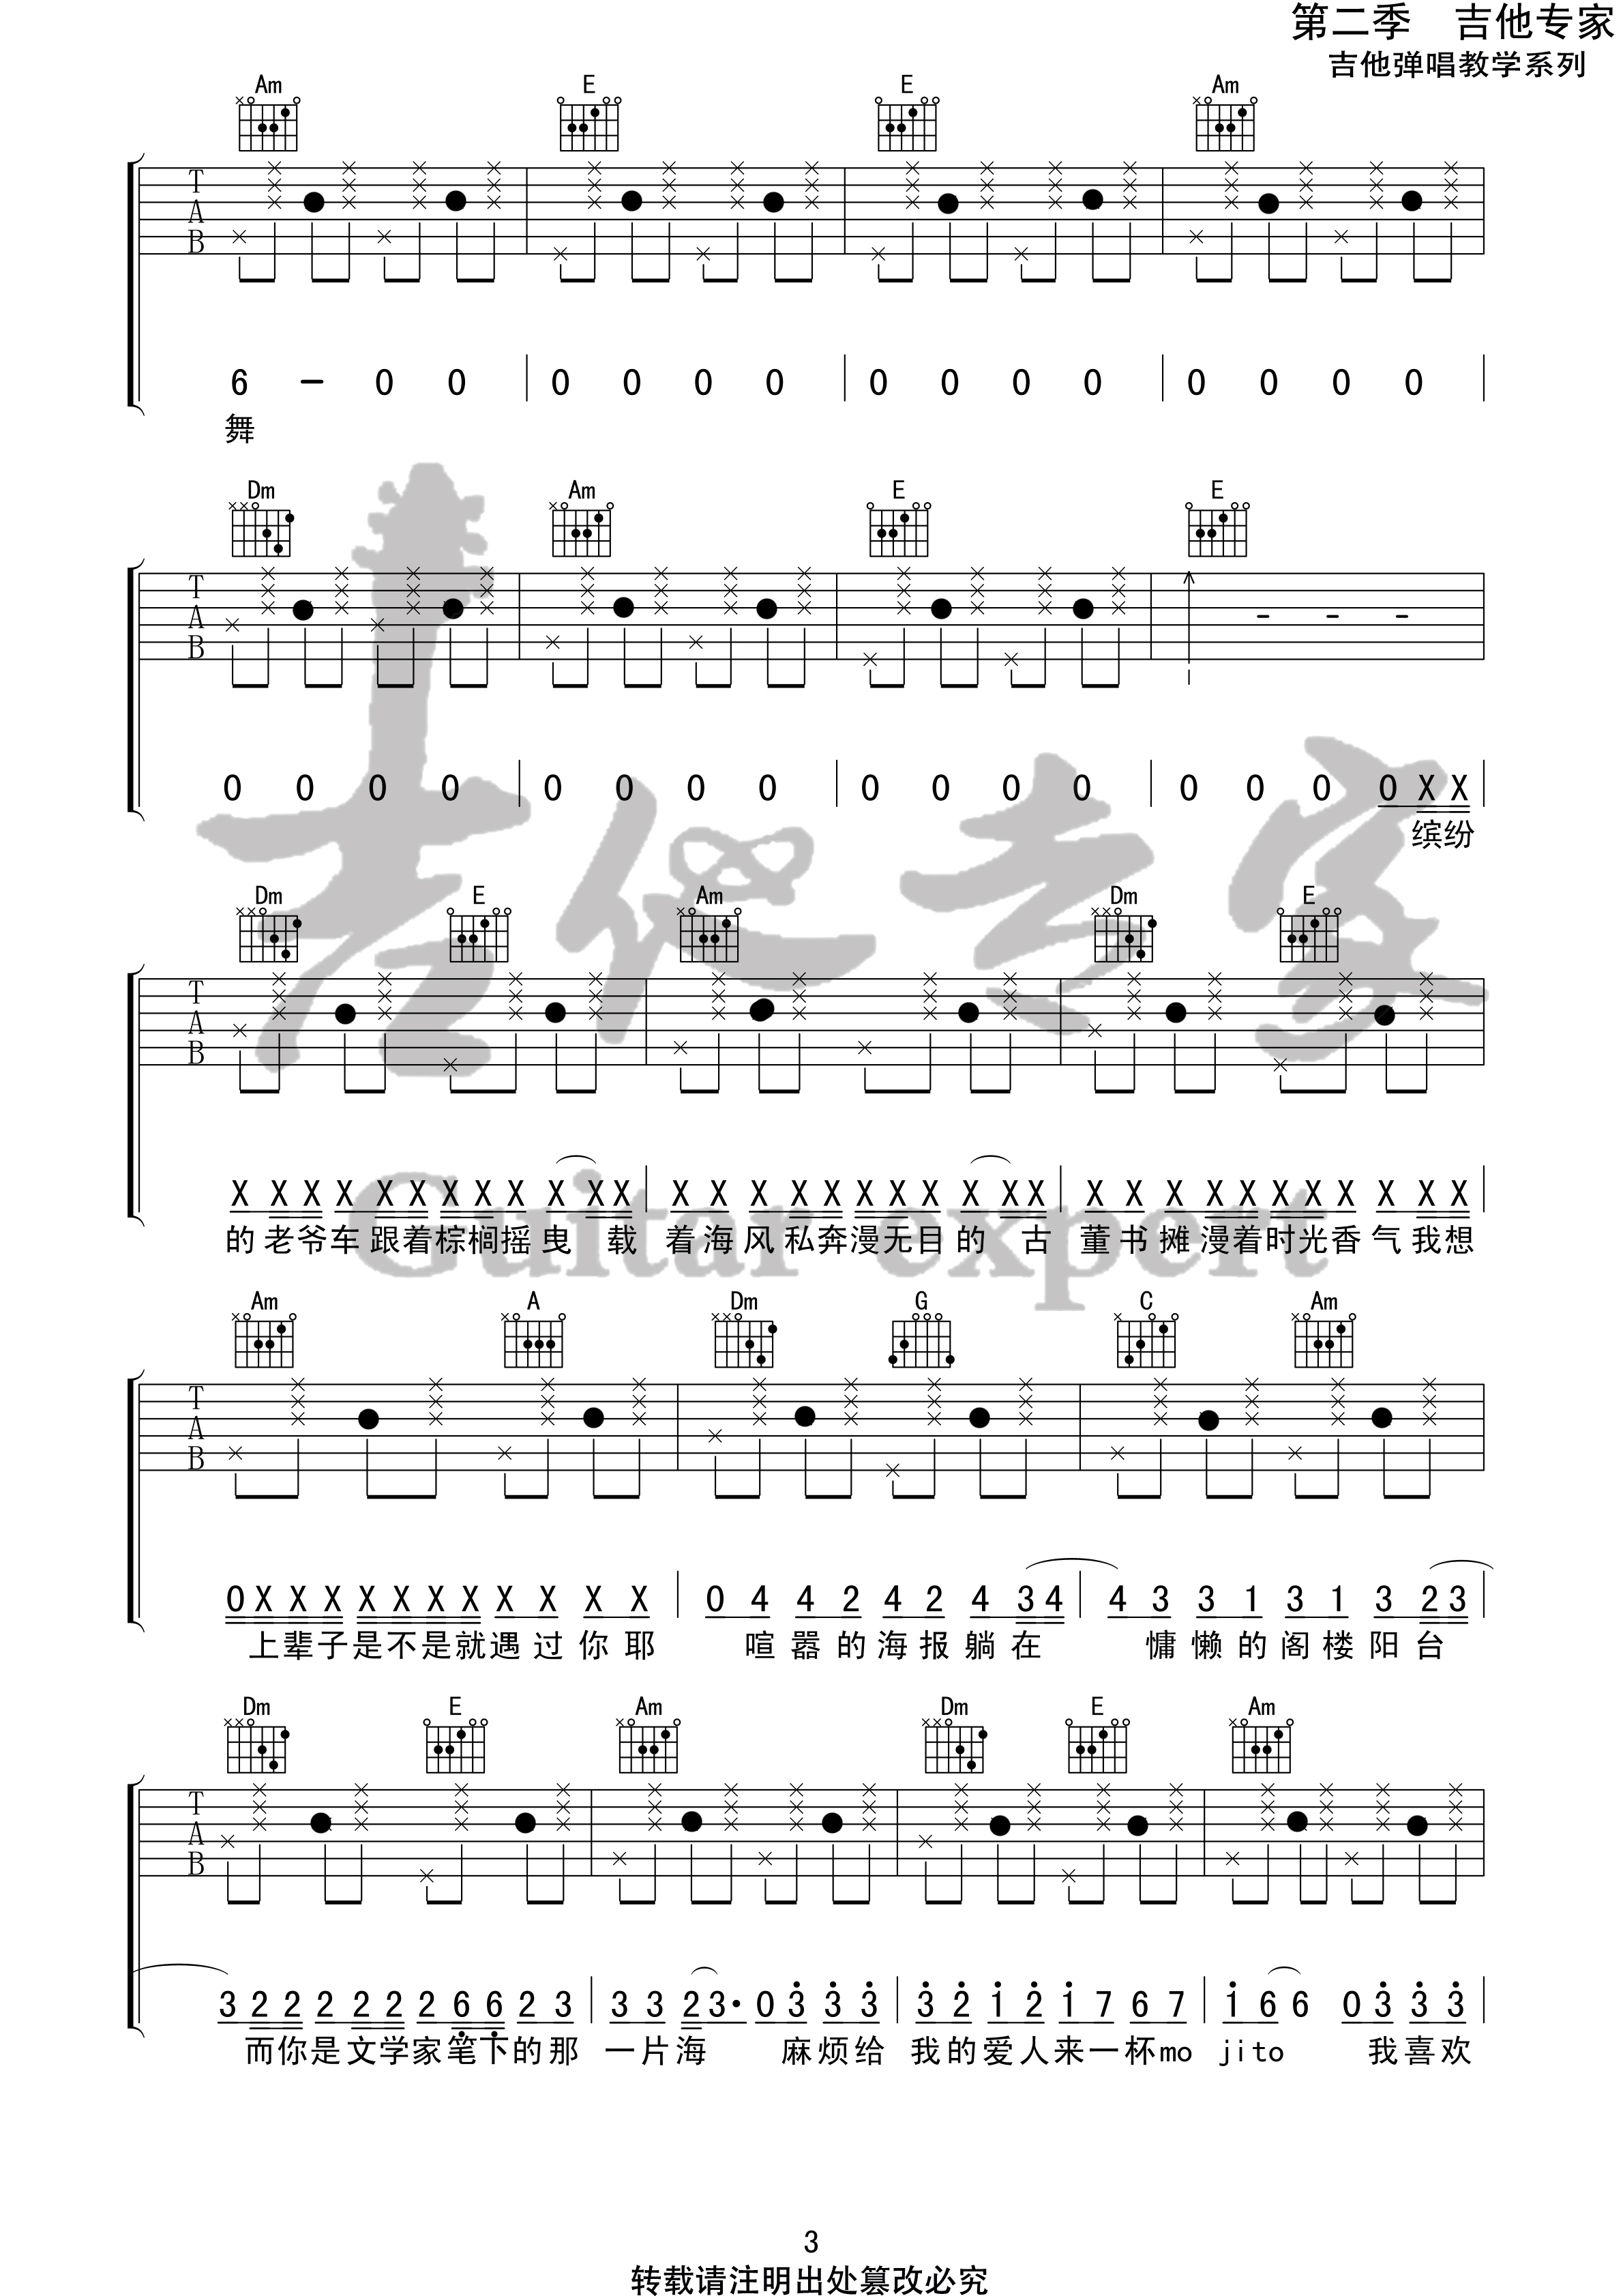 Mojito(音艺吉他专家弹唱教学:第二季第58集)吉他谱(图片谱,弹唱,伴奏,教程)_周杰伦(Jay Chou)_Mojito3 第二季第五十八集.jpg